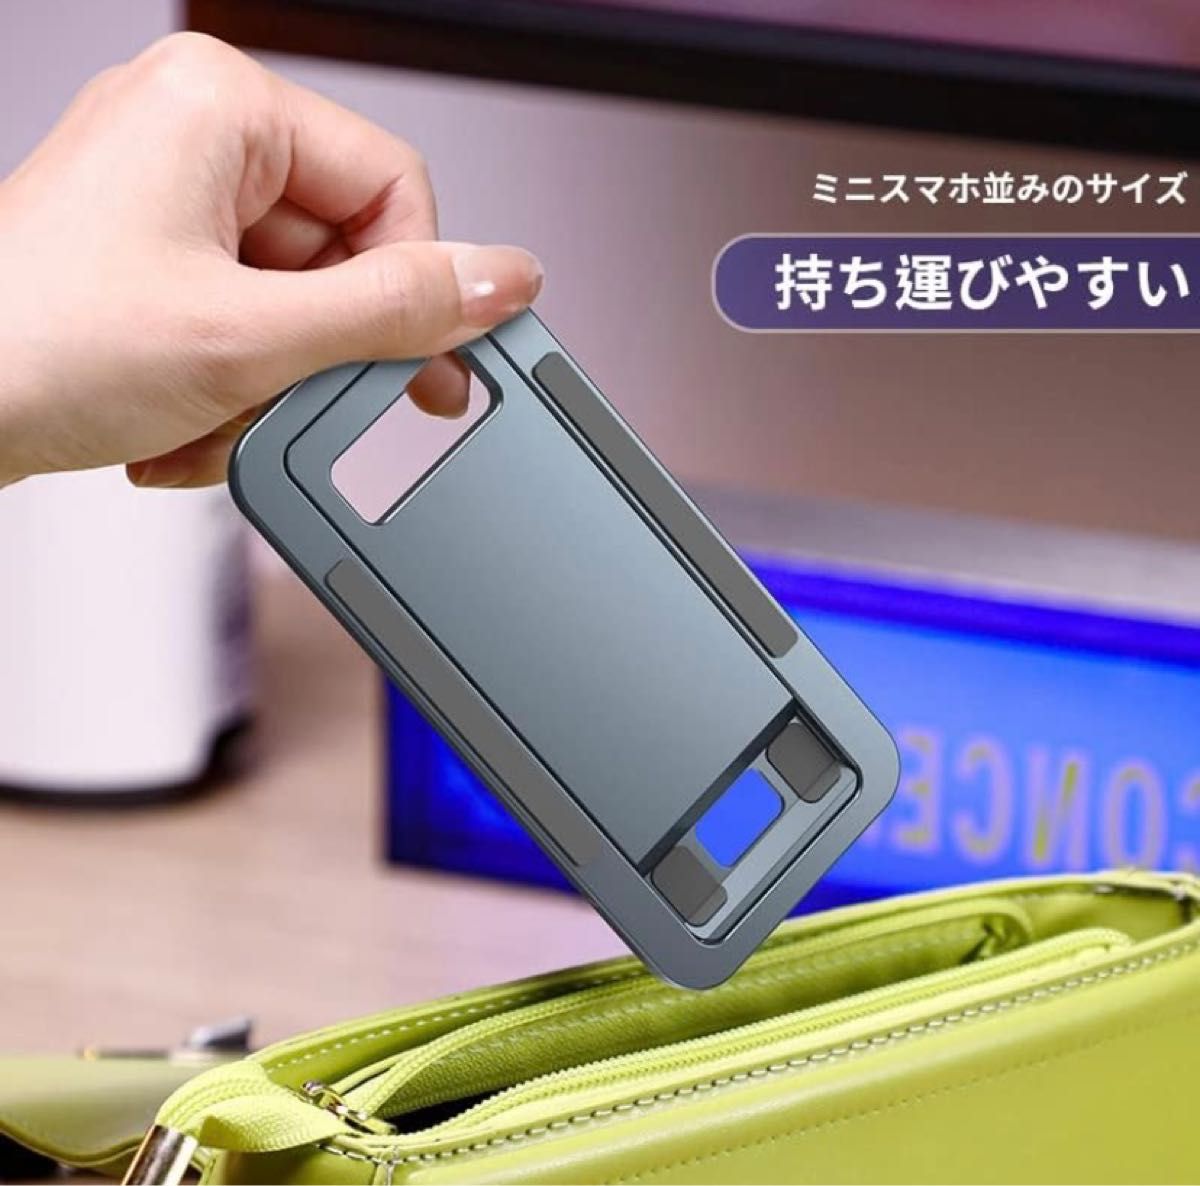 カード型 スマホスタンド 薄型 アルミ合金製 持ち運び便利 iphoneスタンド 折りたたみ式 卓上 角度変換可 